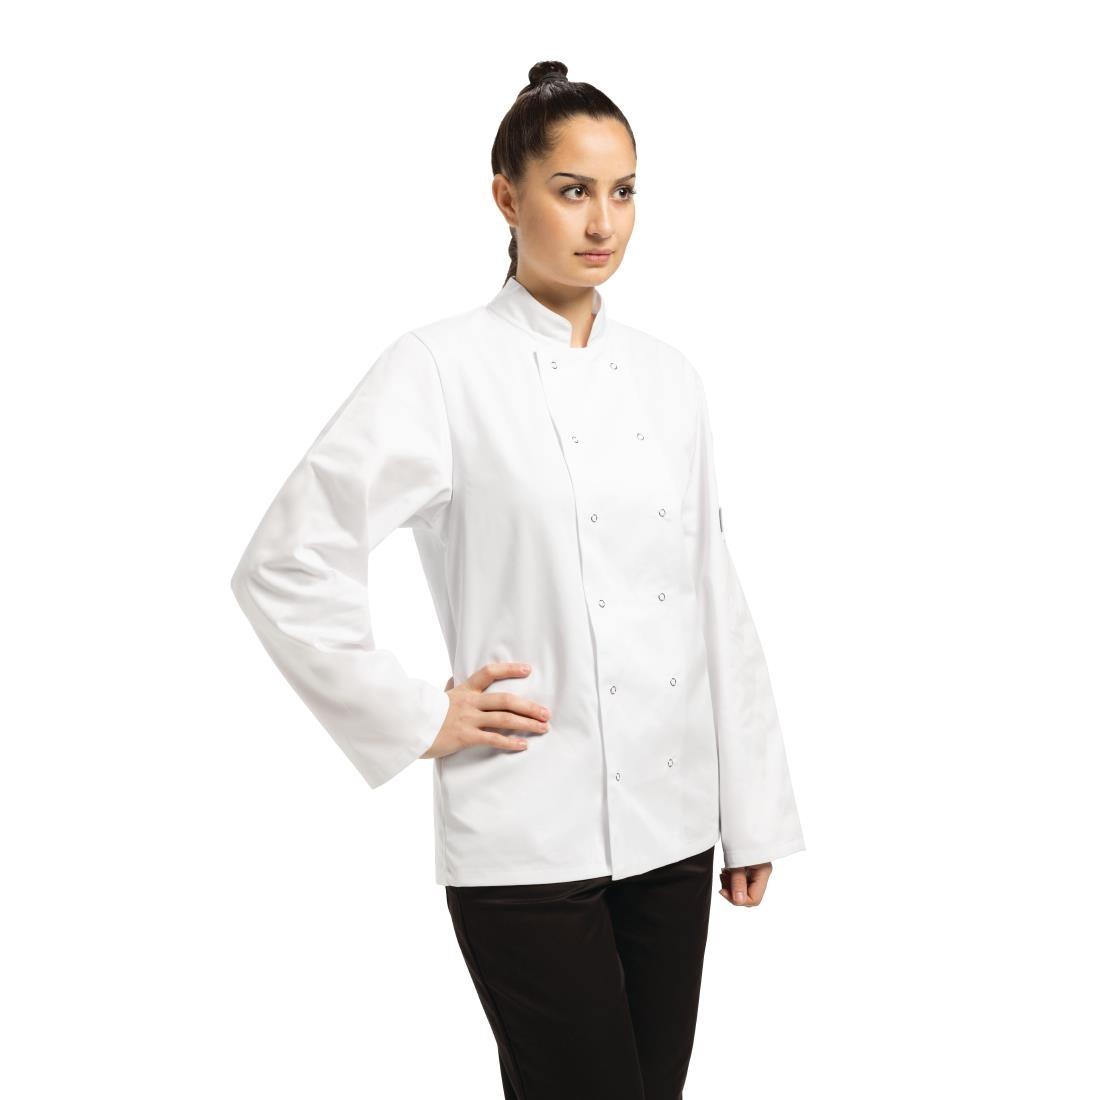 Whites Vegas Unisex Chefs Jacket Long Sleeve White XS - A134-XS  - 2